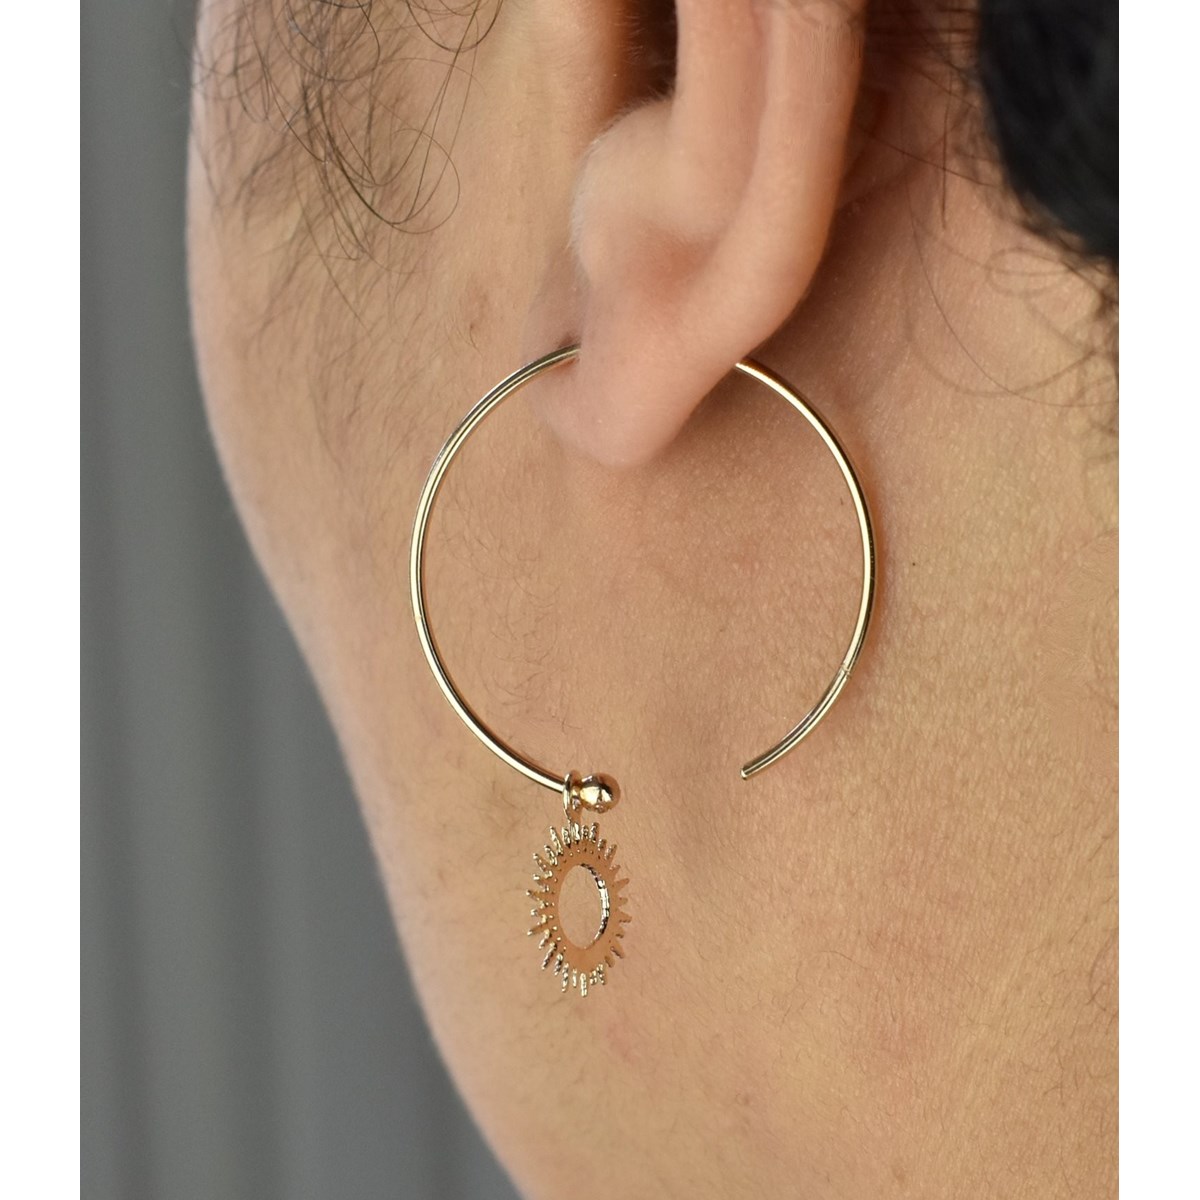 Boucles d'oreilles créole soleil pendant Plaqué or 750 3 microns - vue 3